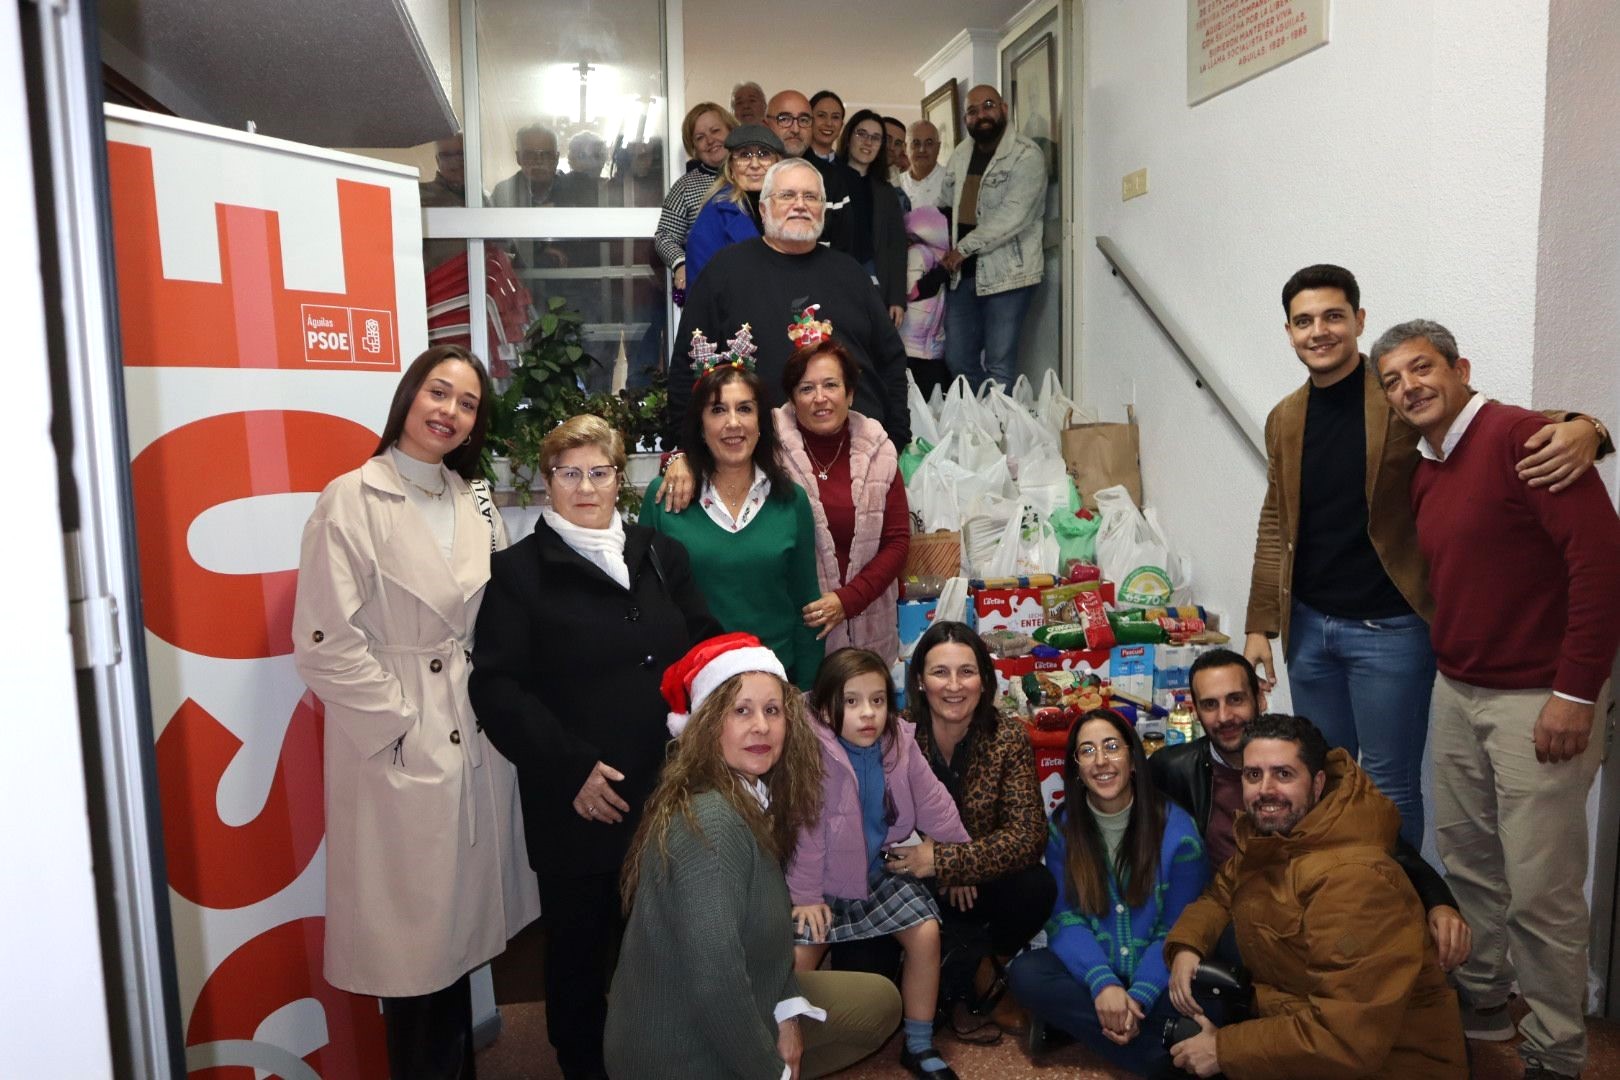 La Agrupación Socialista de Águilas y Juventudes Socialistas hacen entrega a Cáritas de alimentos recogidos en su campaña de Navidad